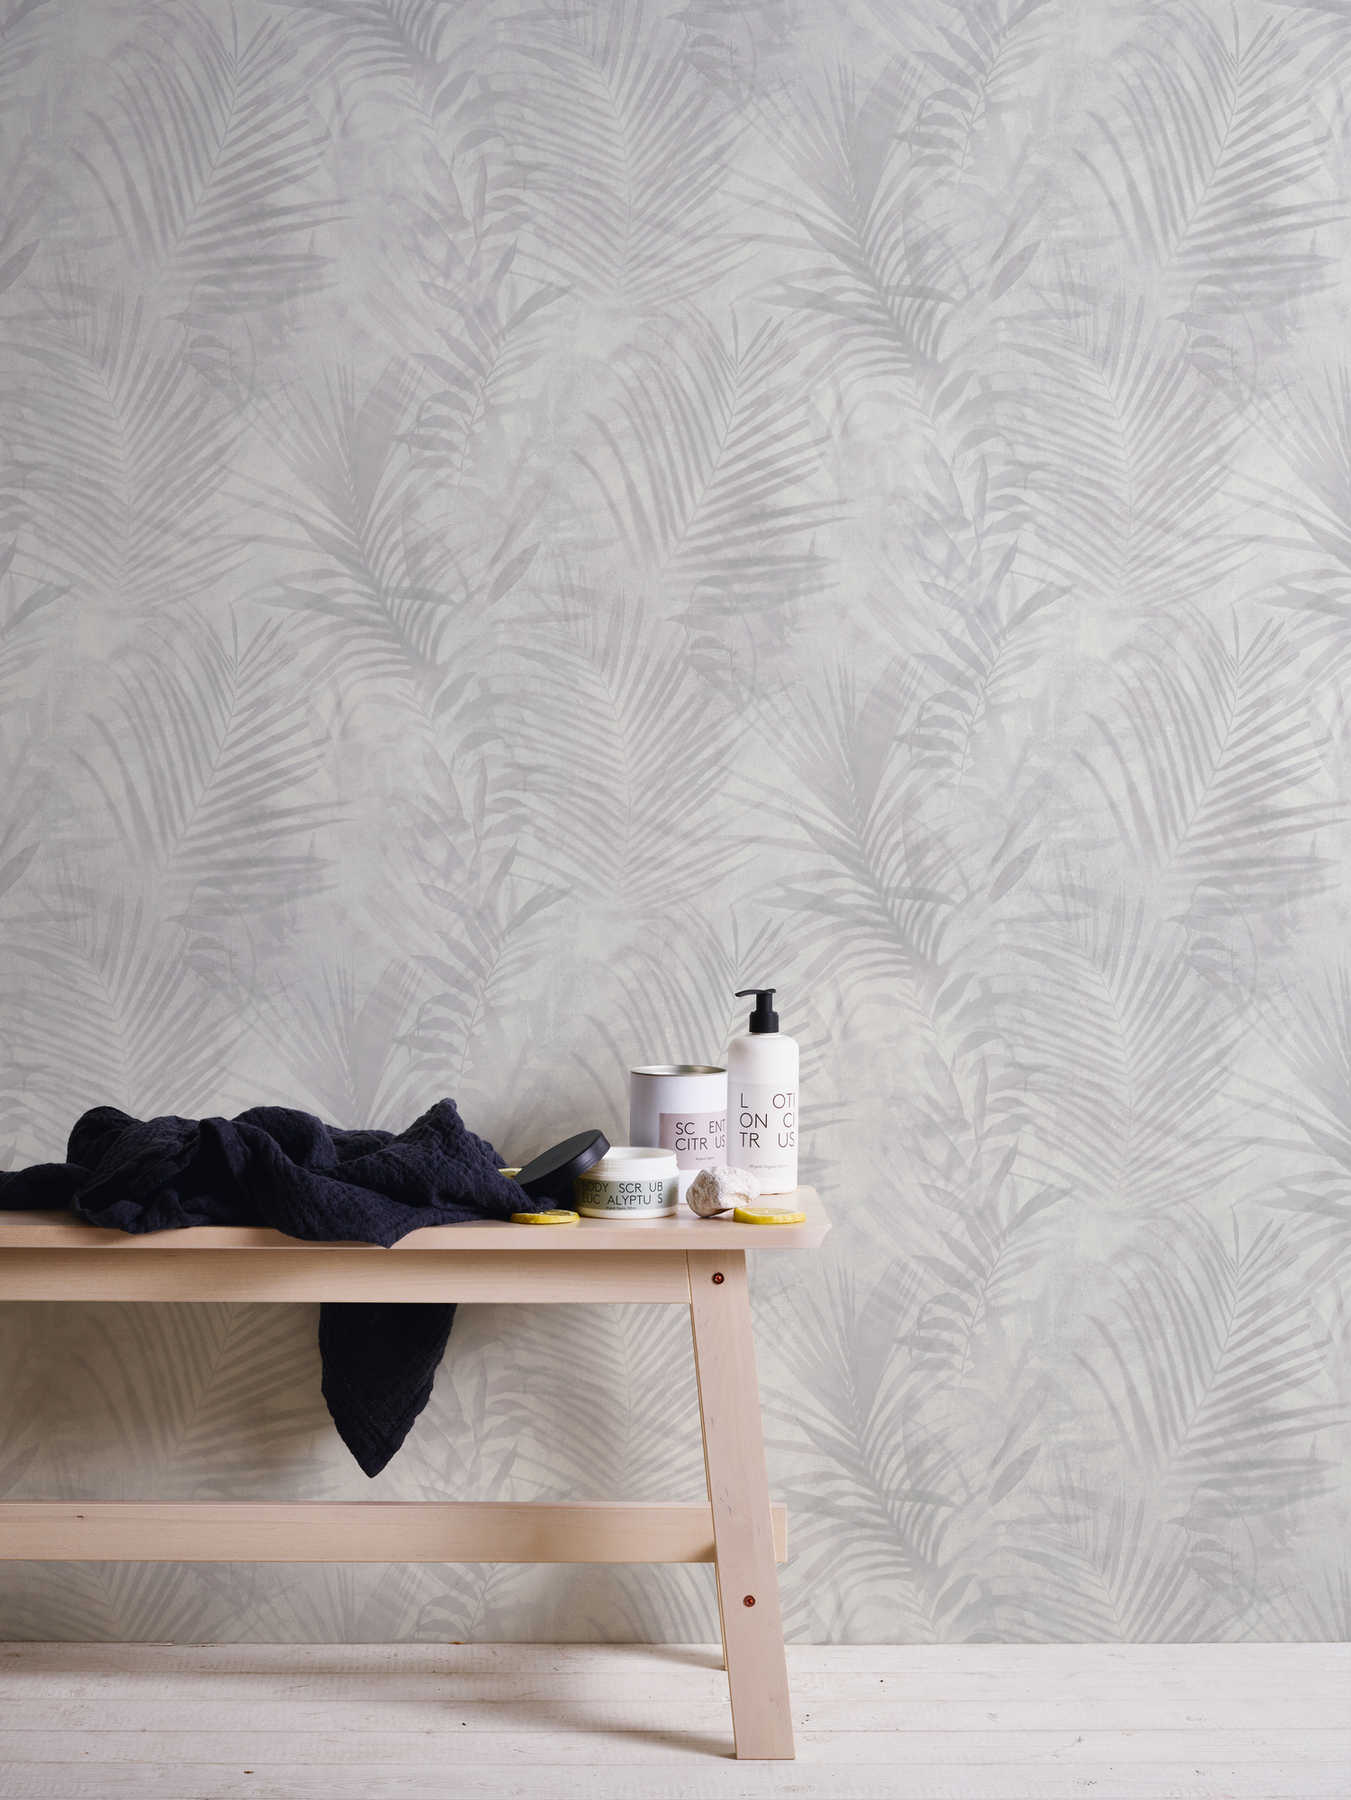             behang palmboom patroon in linnen look - grijs, wit, crème
        